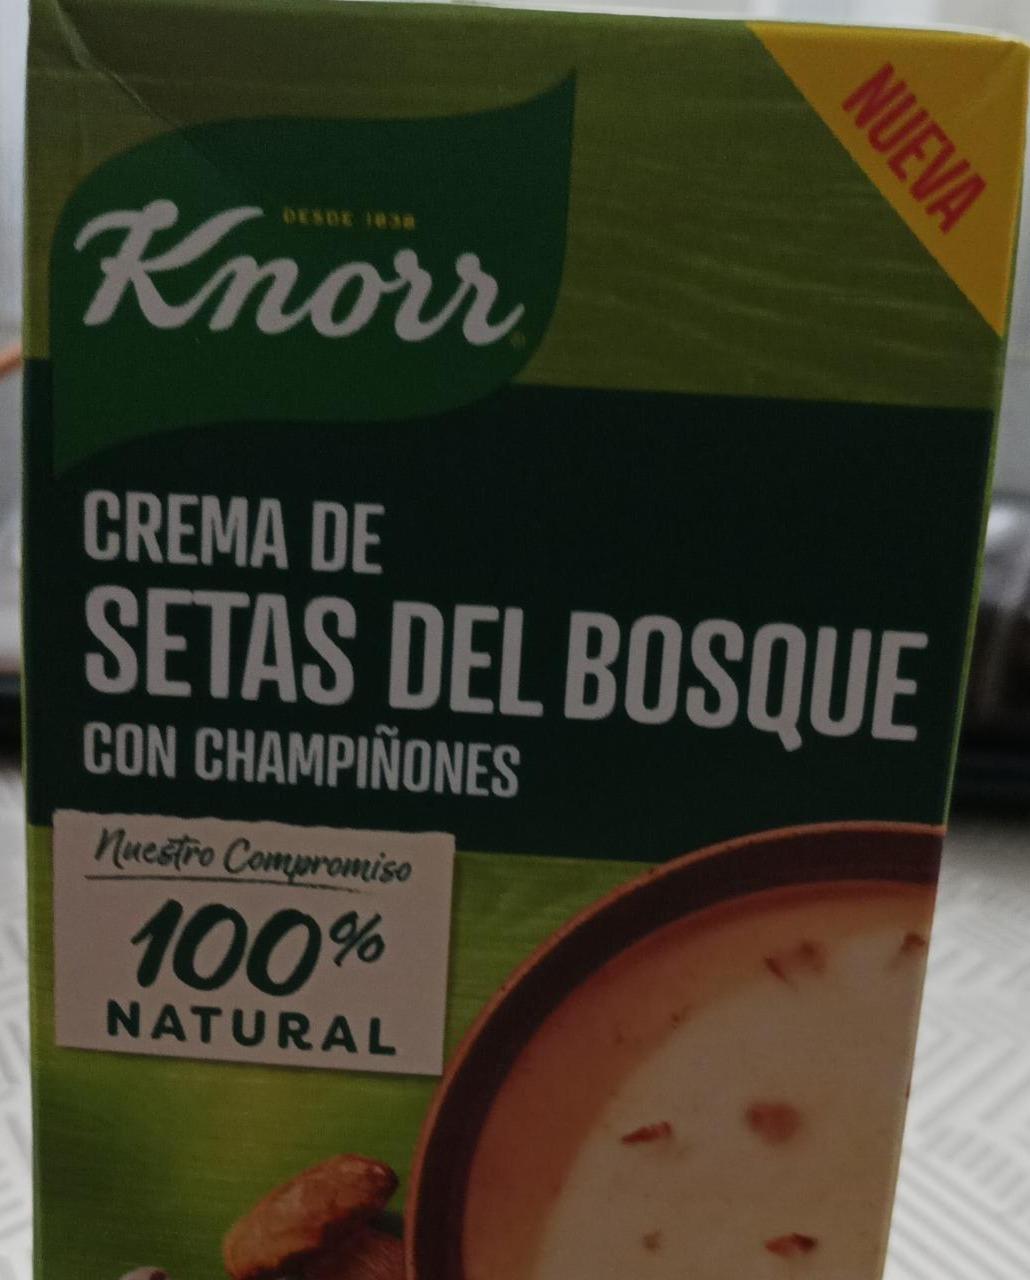 Fotografie - Crema de setas del bosque con champiñones Knorr